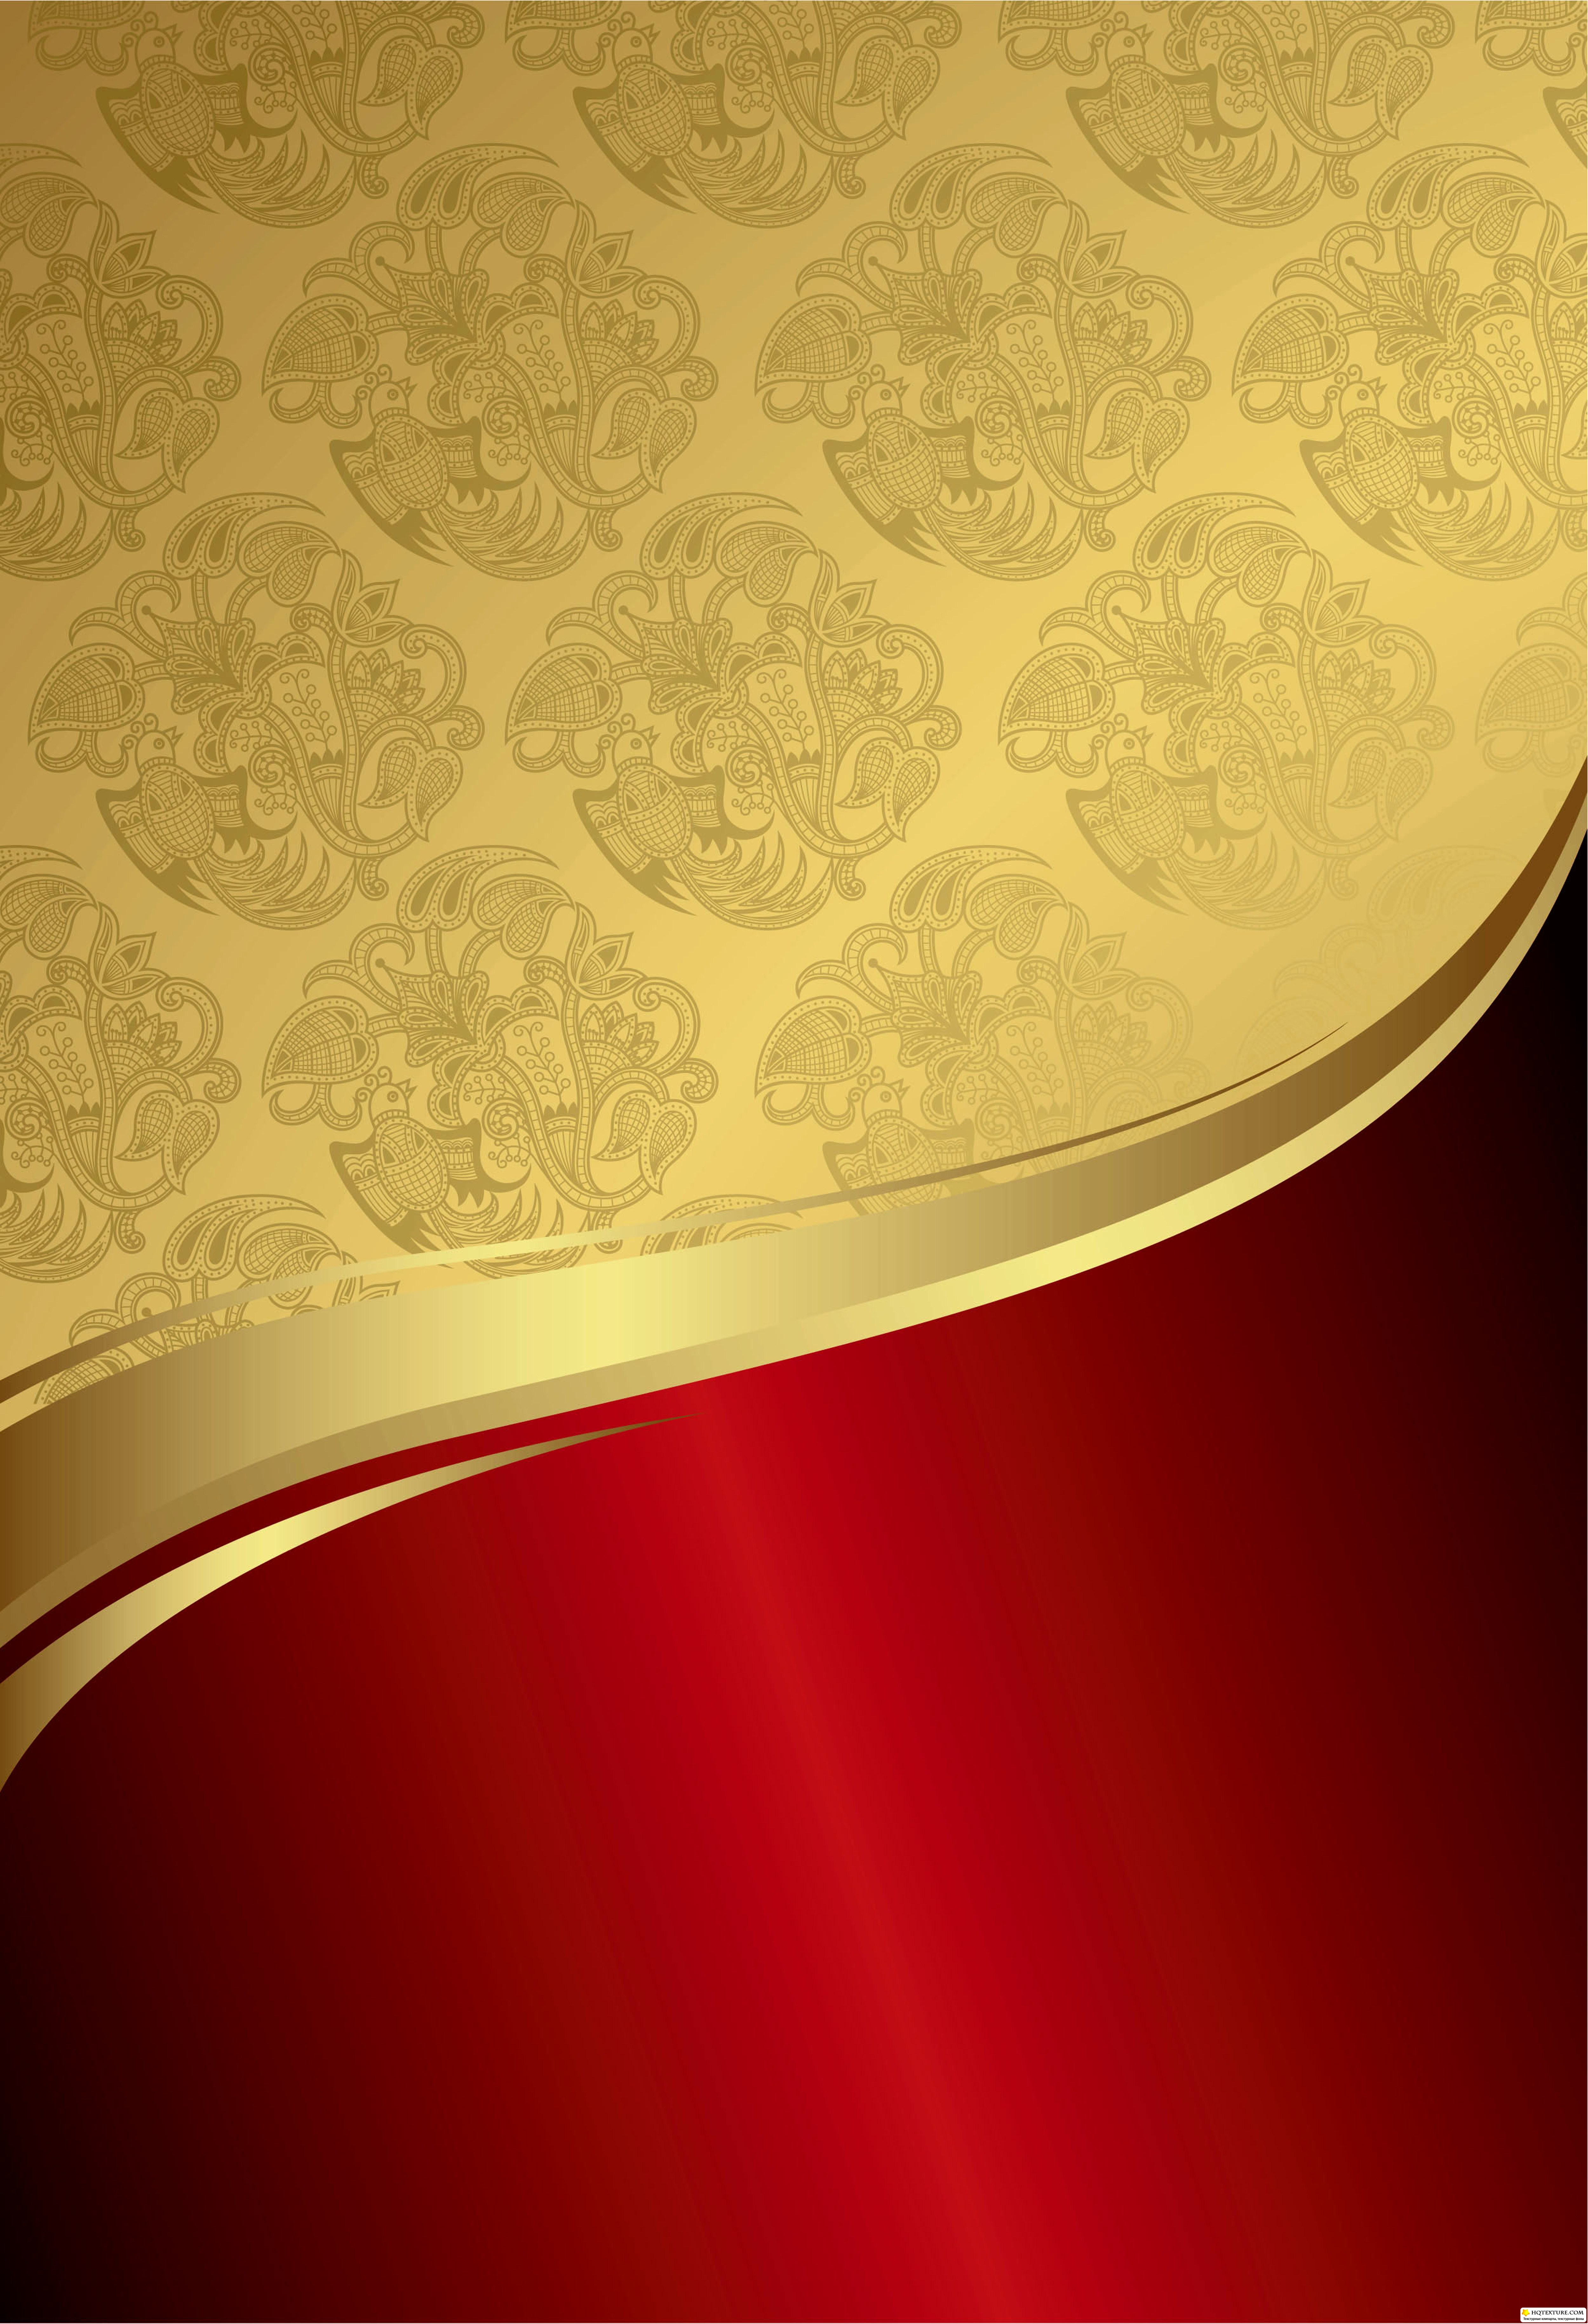 35+] Gold and Red Wallpaper - WallpaperSafari